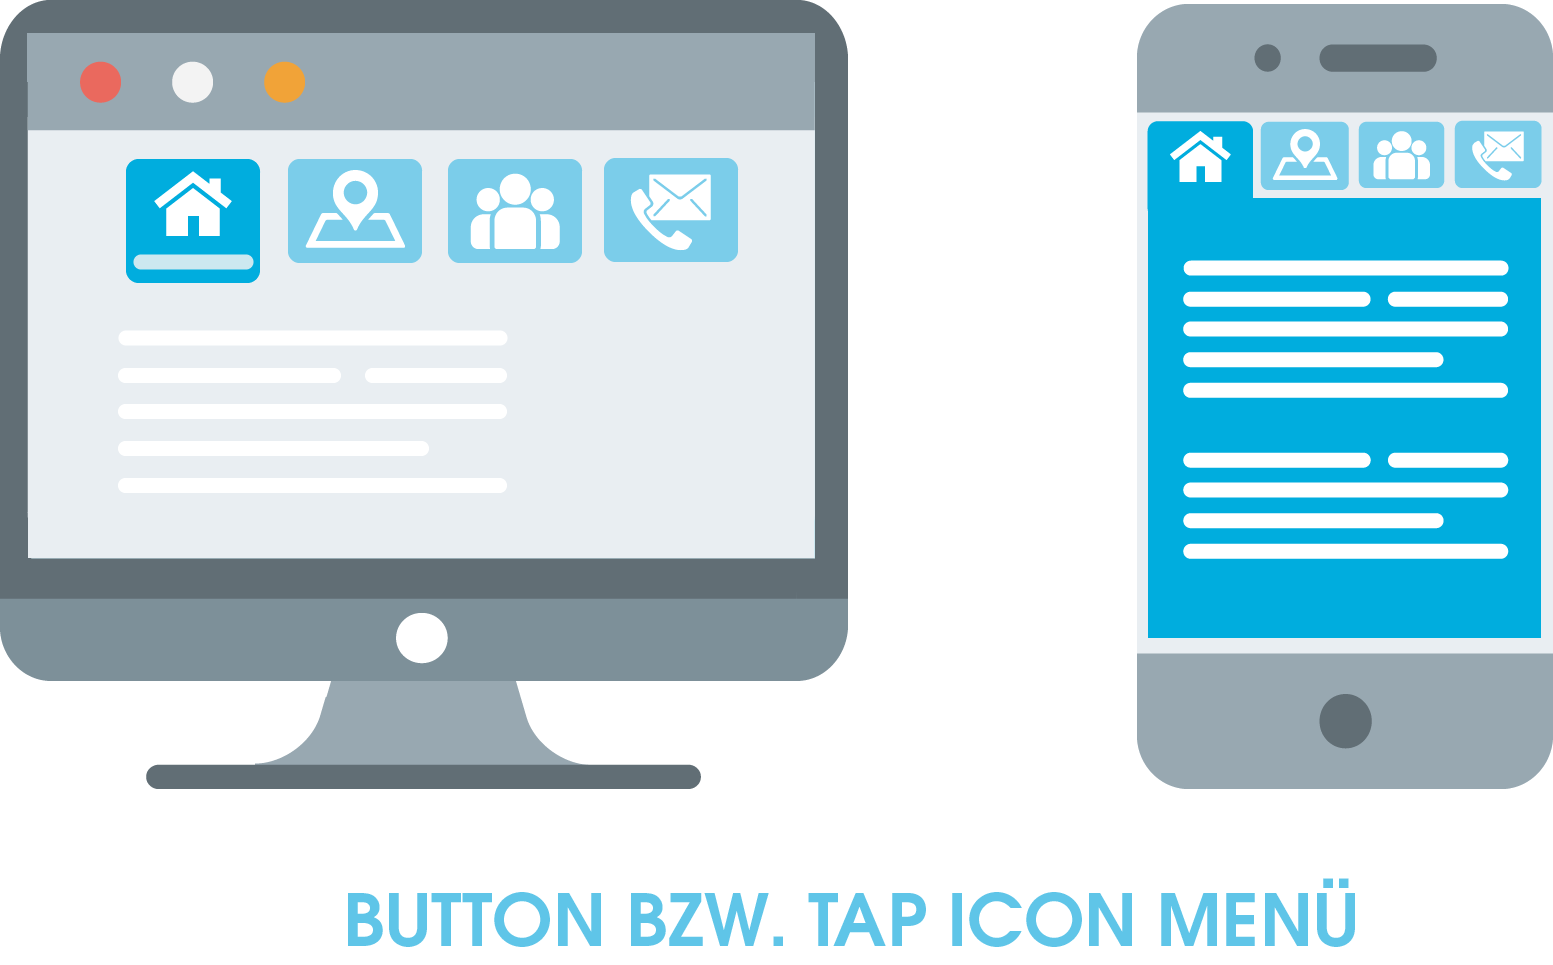 Zu sehen ist ein Button bzw. Tap Icon Menü, das zu den horizontalen Menüs gehört. Es zeichnet sich dadurch aus, dass sich das Menü für genau das Icon vergrößert, das der Nutzer anklickt.